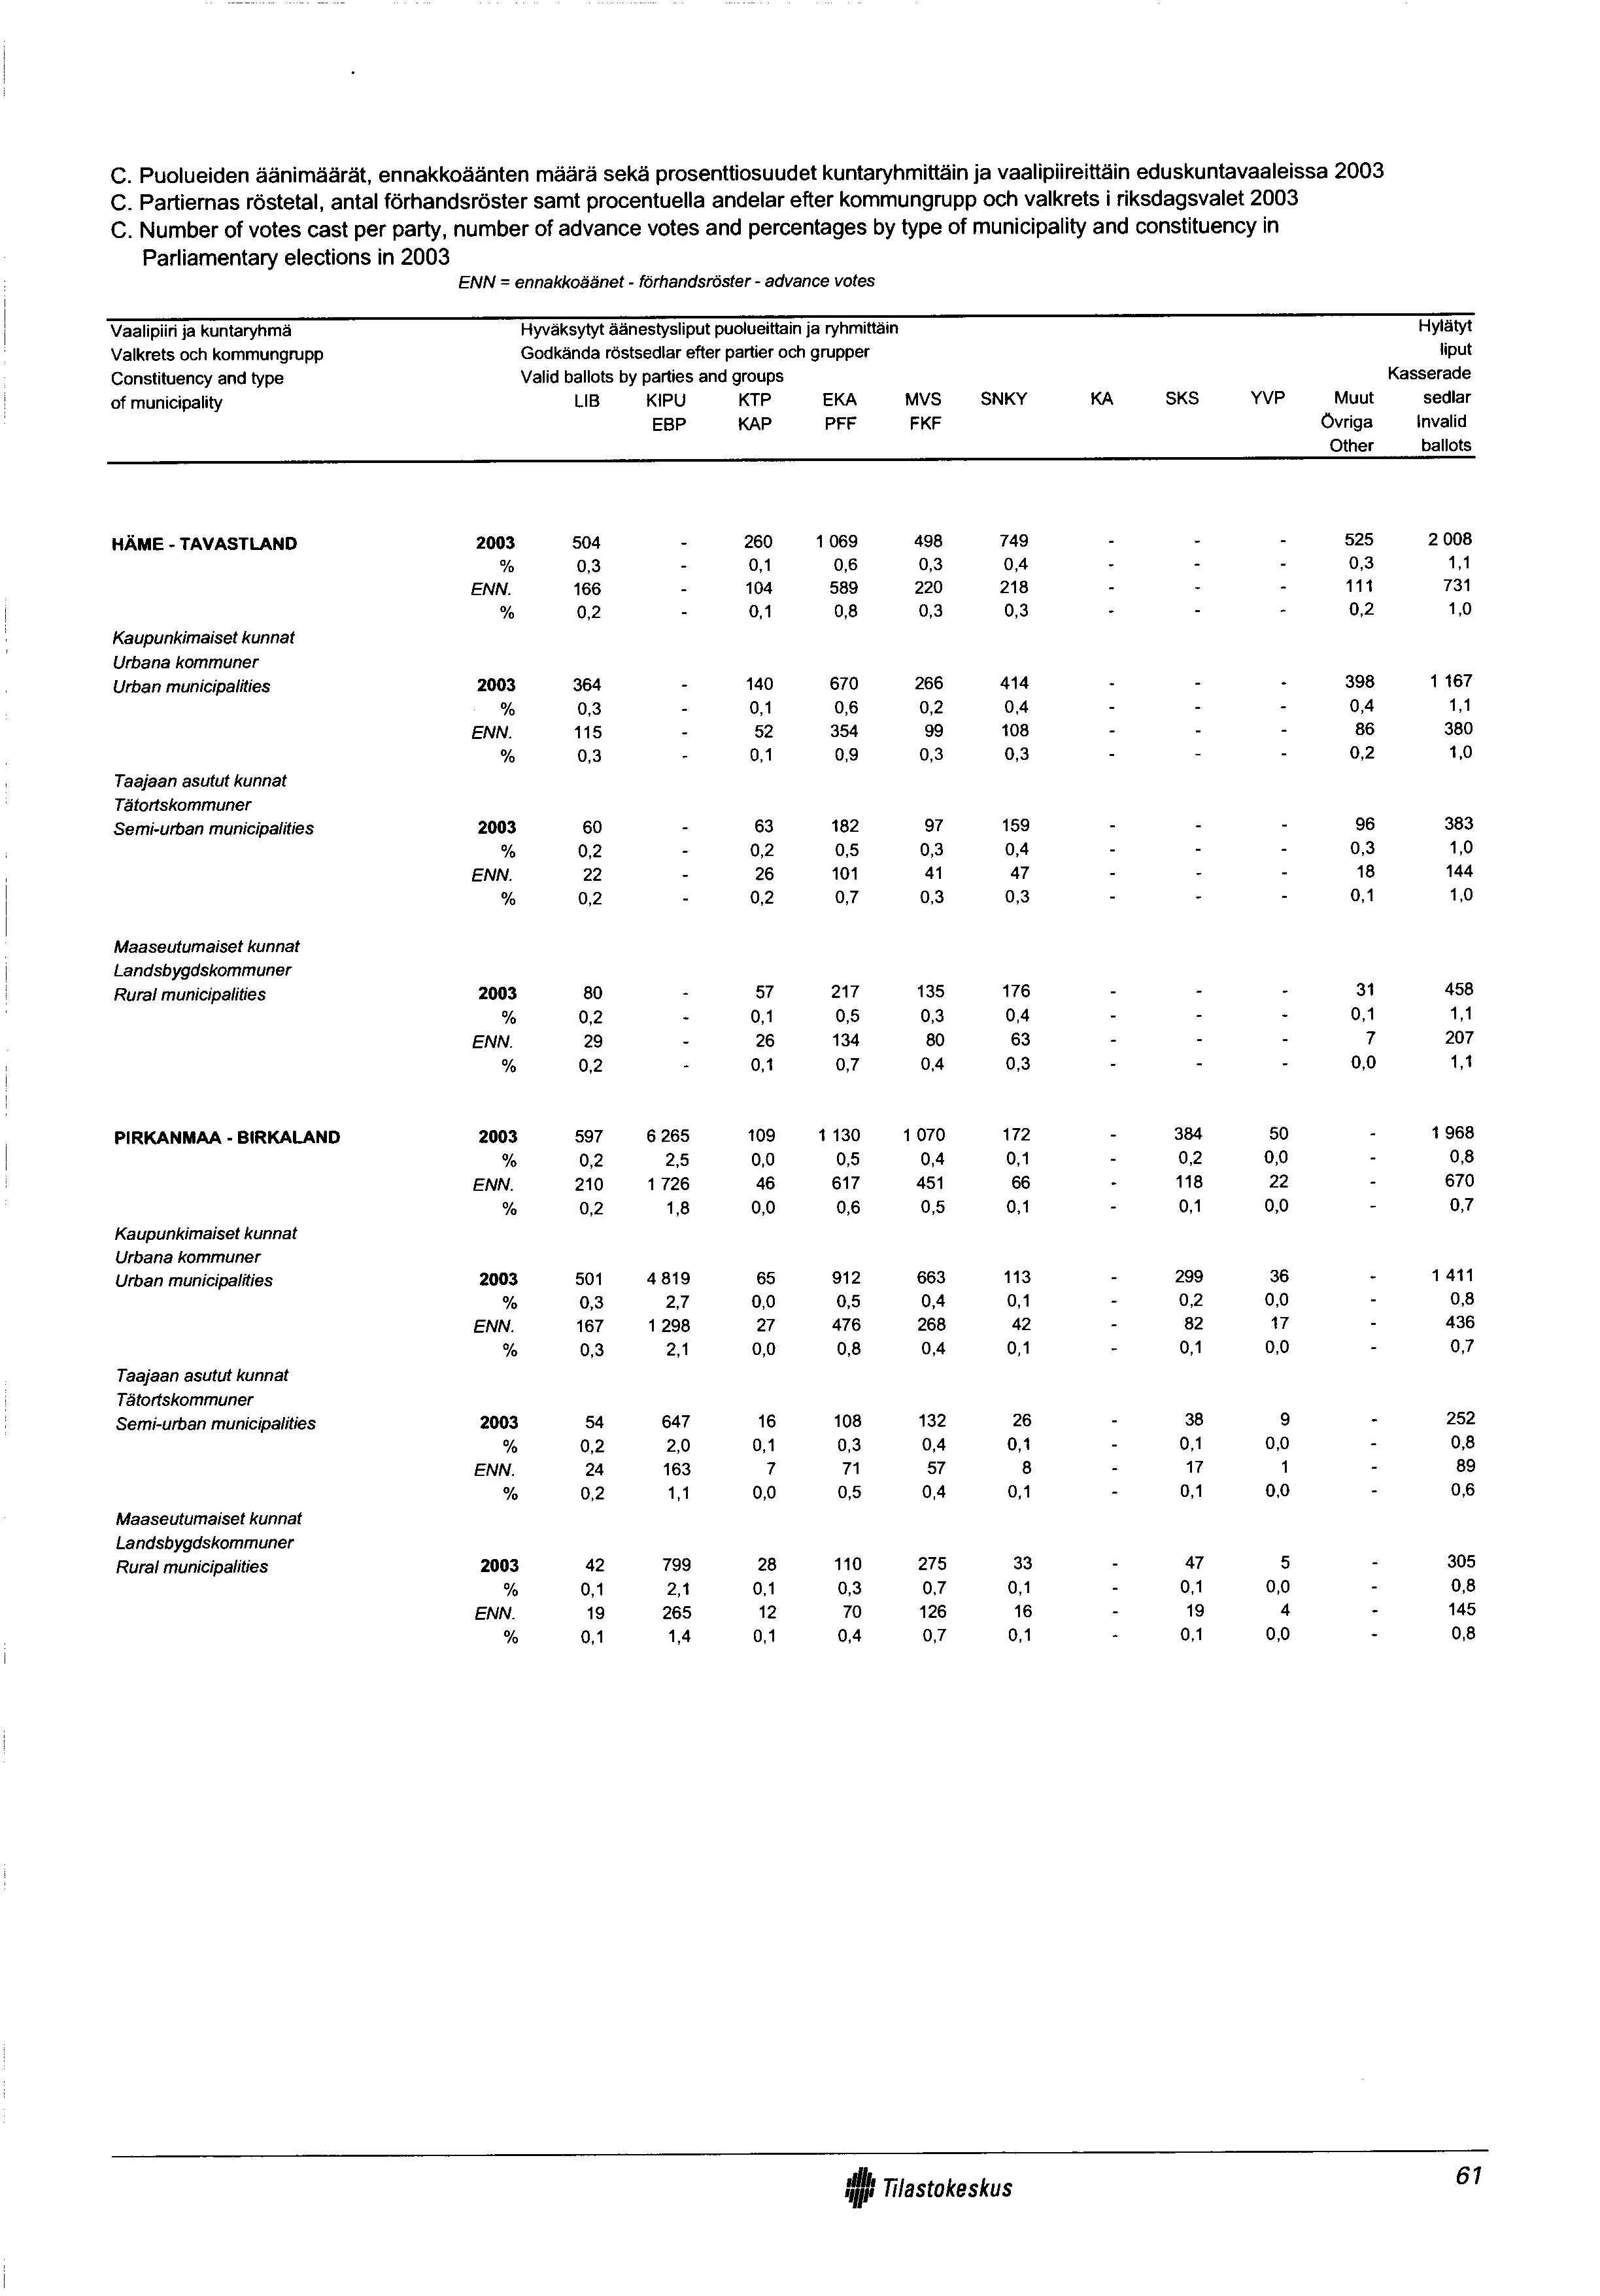 C. Puolueiden äänimäärät, ennakkoäänten määrä sekä prosenttiosuudet kuntaryhmittäin ja vaalipiireittäin eduskuntavaaleissa 2003 C.